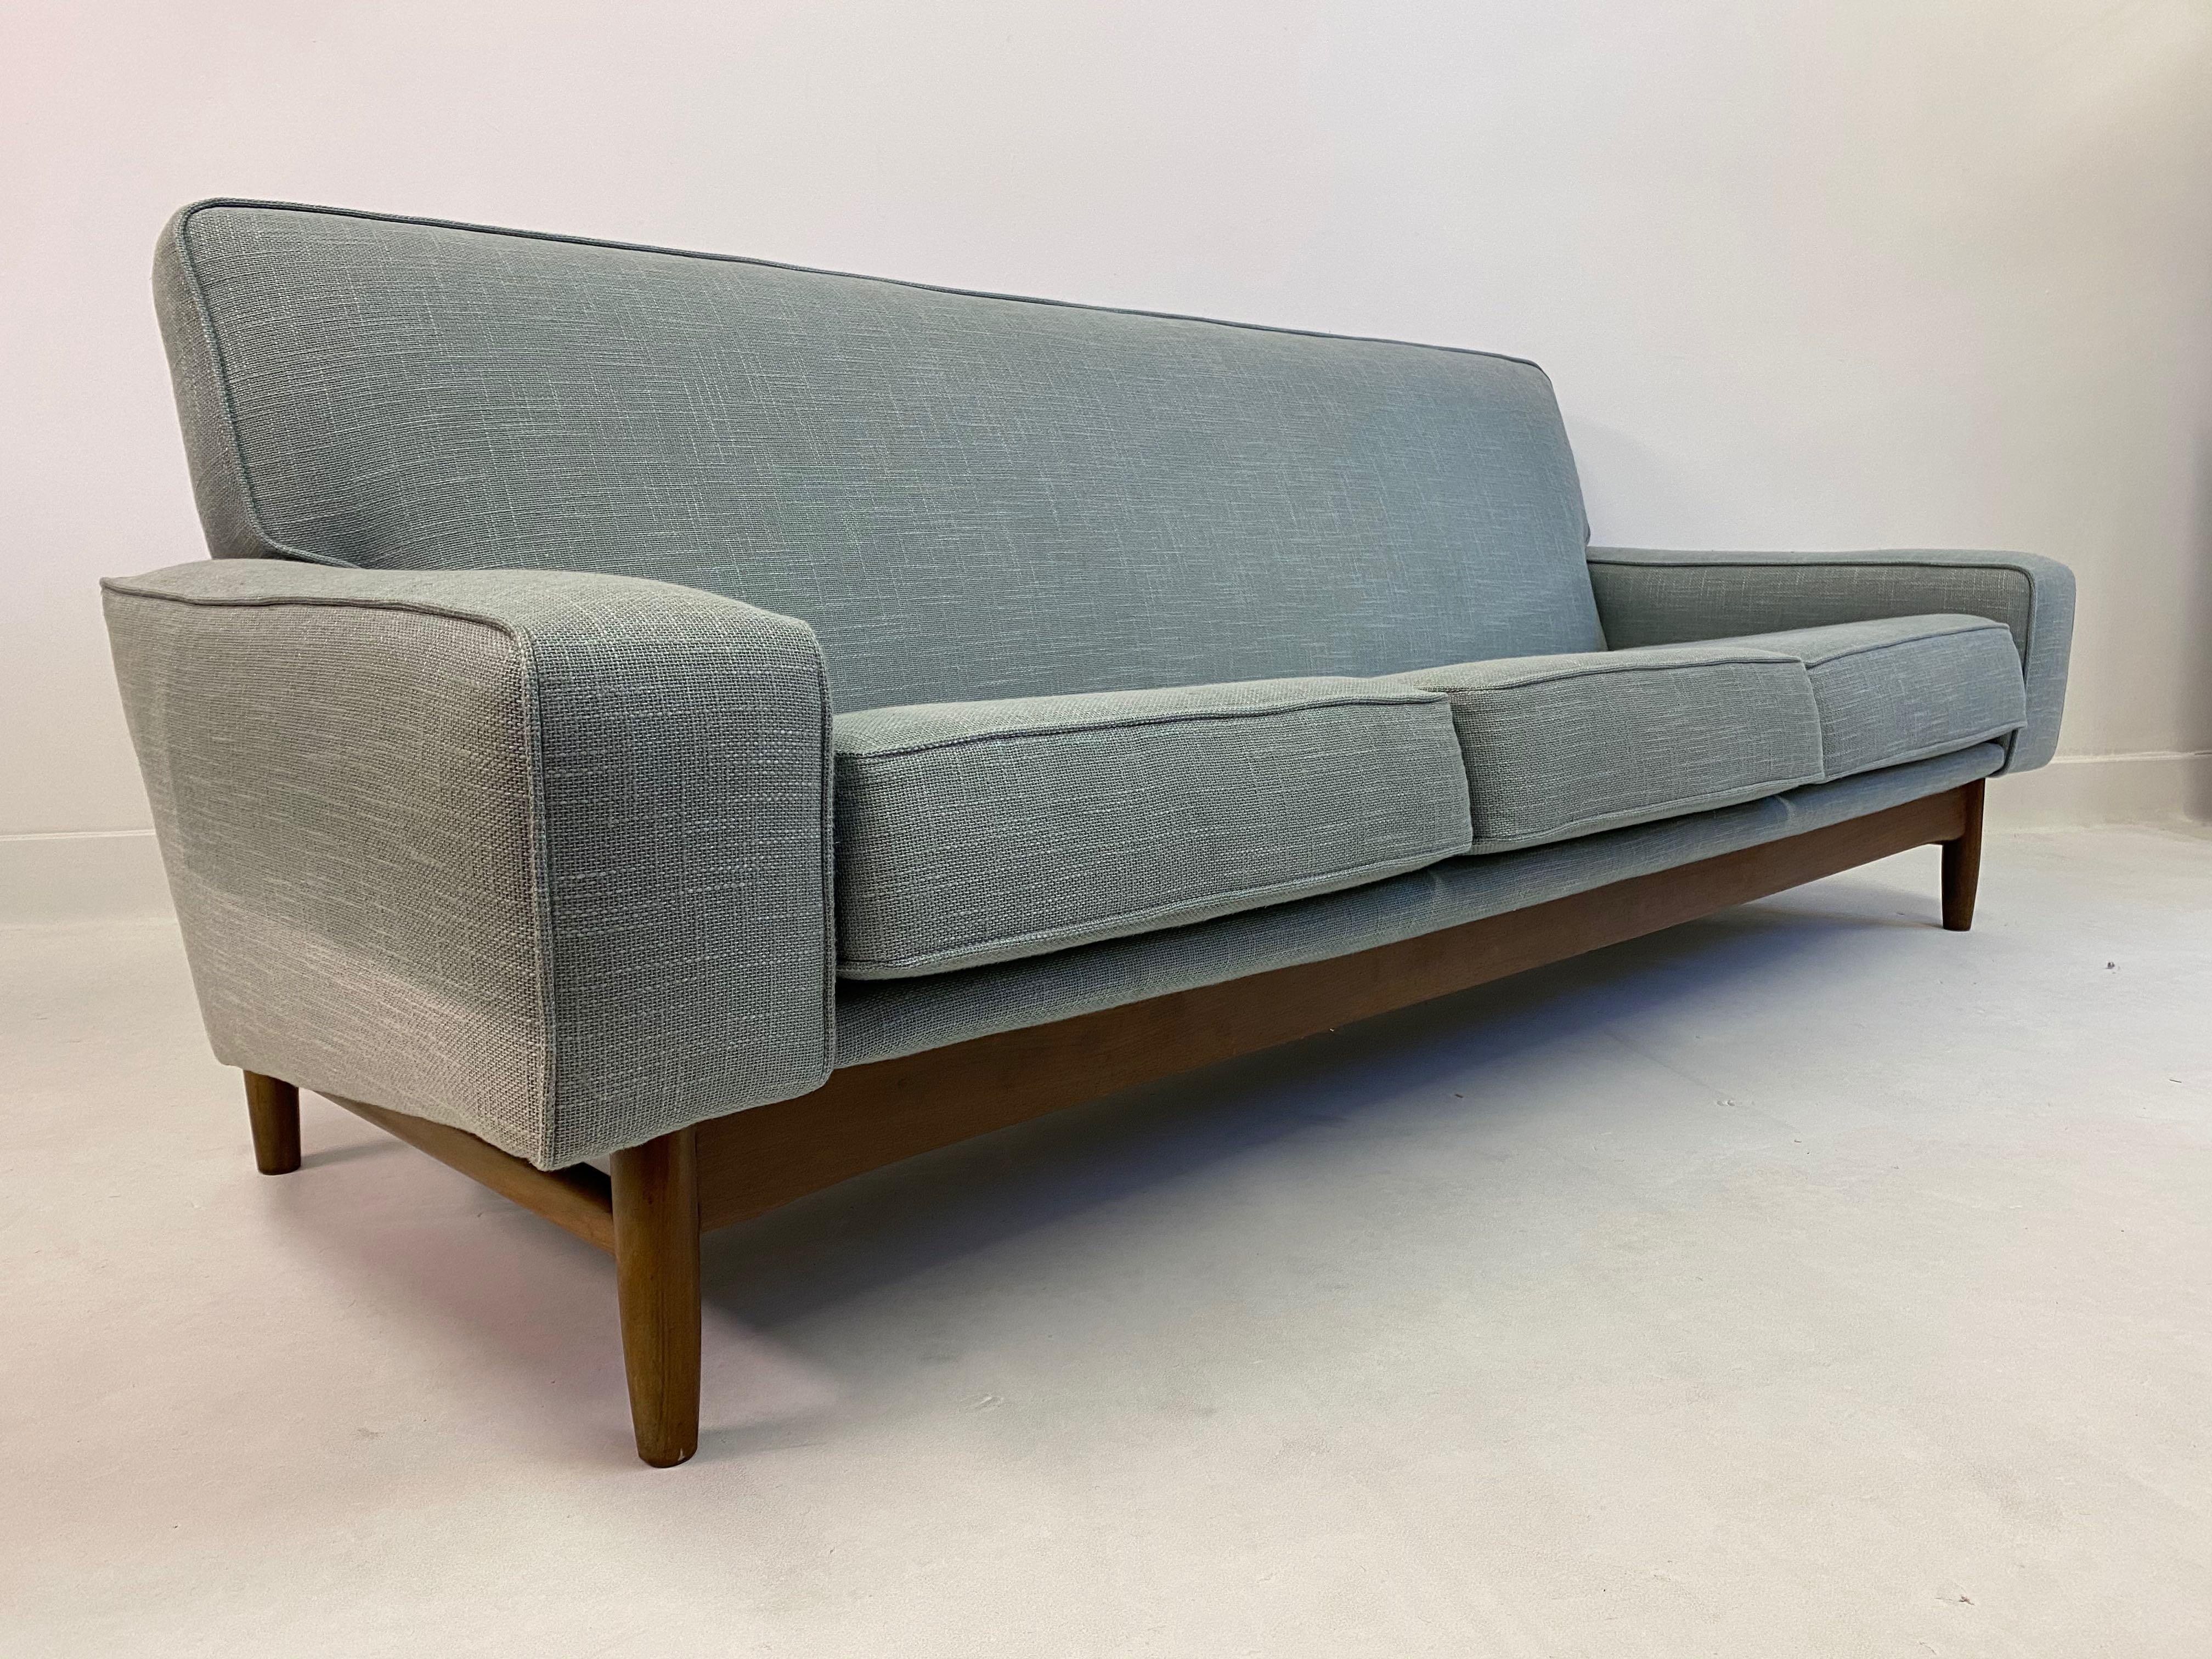 20th Century Midcentury 1960s Three-Seat Teak Sofa by Ib Kofod-Larsen for G Plan